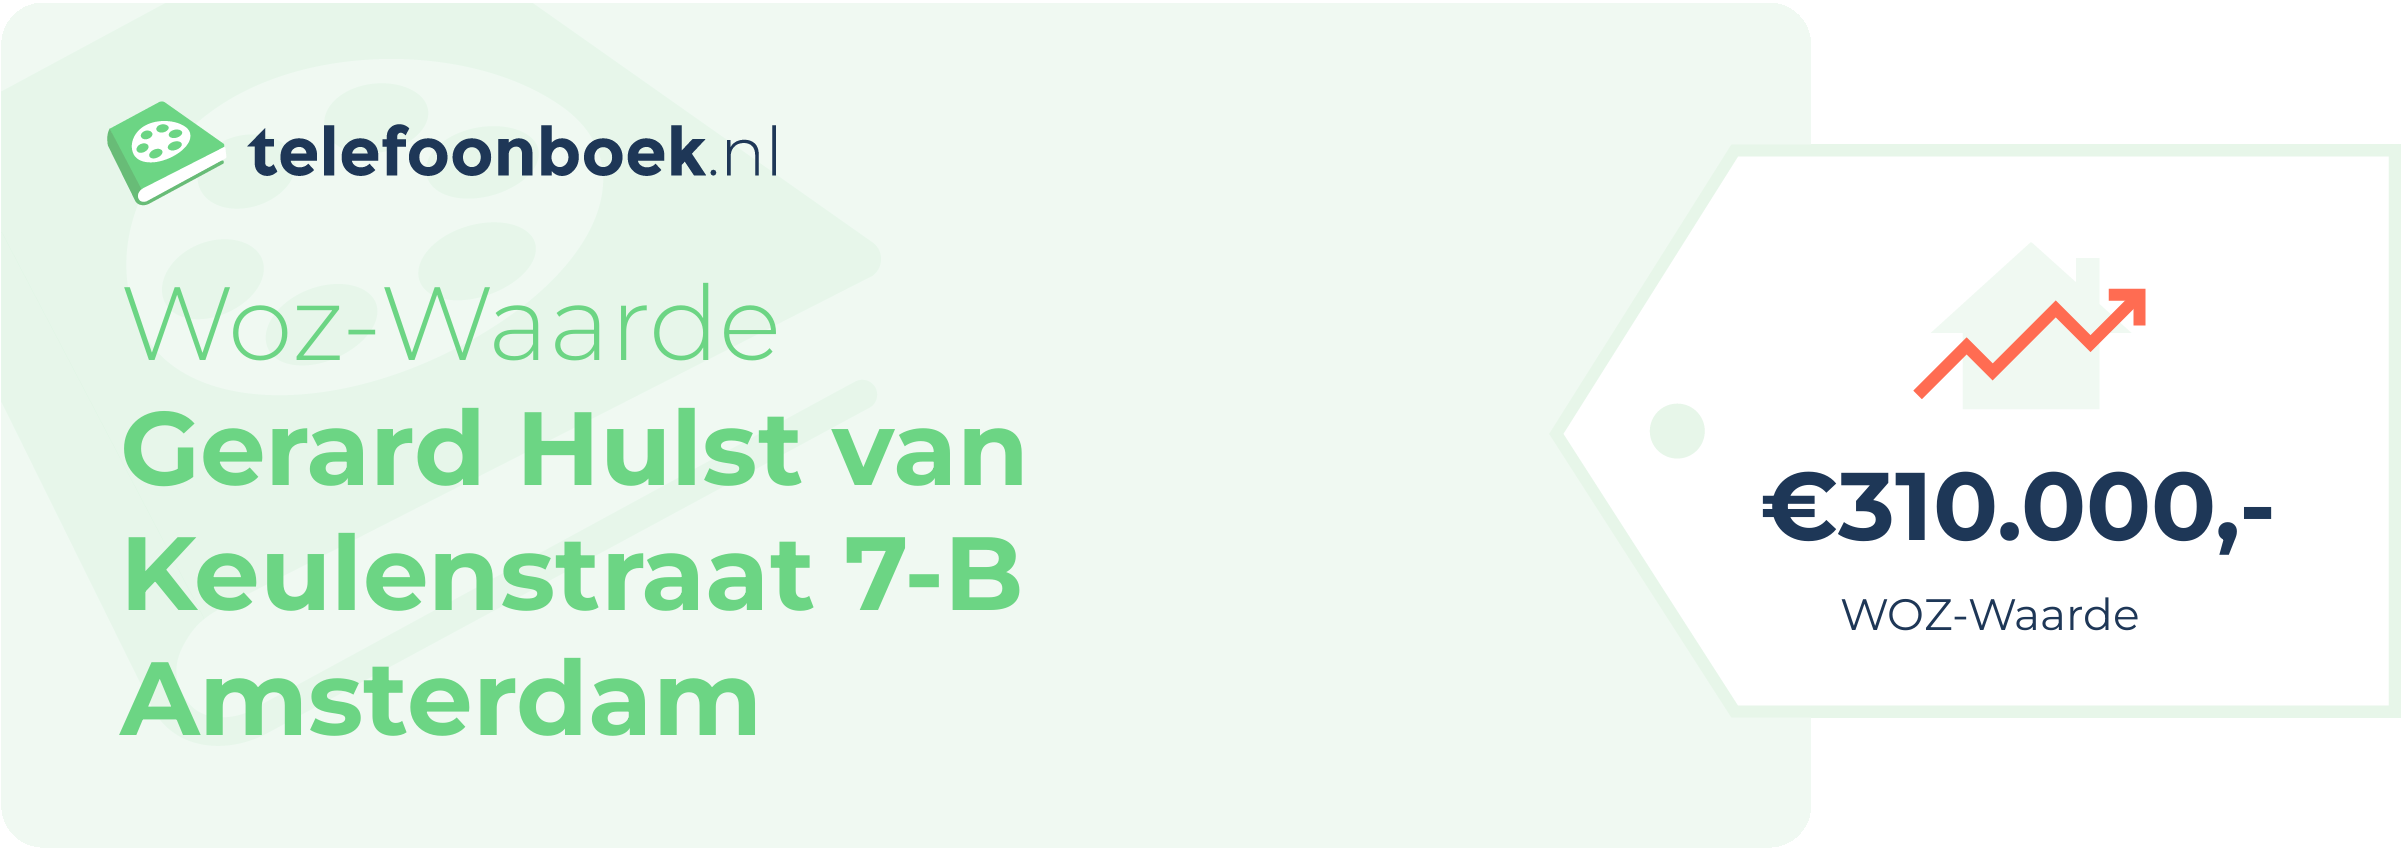 WOZ-waarde Gerard Hulst Van Keulenstraat 7-B Amsterdam